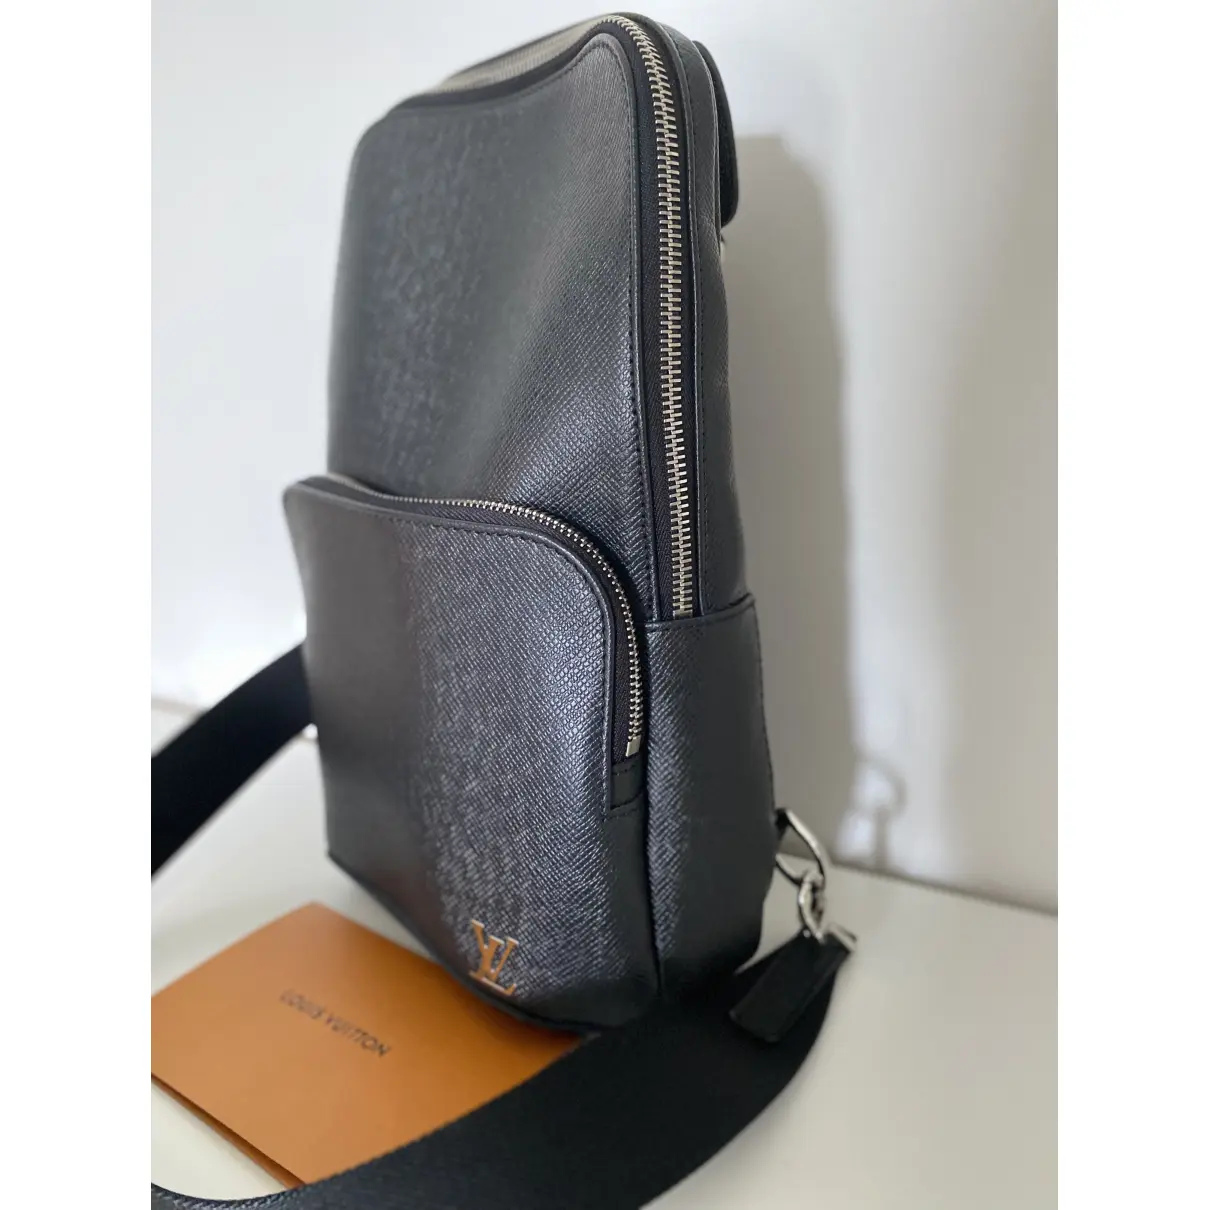 Avenue sling leather bag Louis Vuitton